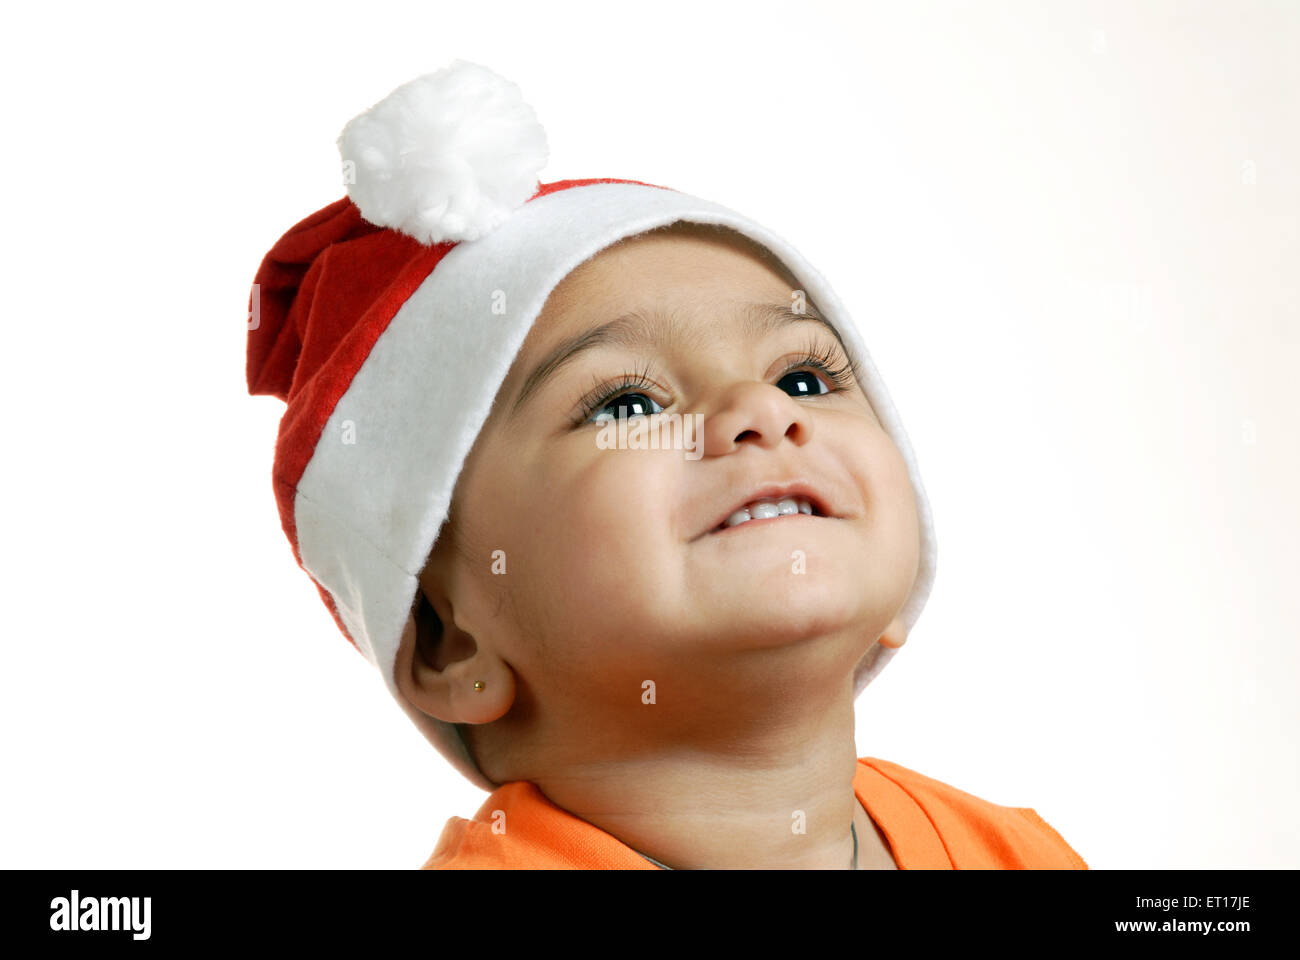 Indisches Kind baby boy Weihnachtsfeier Weihnachtsmann Mütze nach oben  geschaut - Herr Nr. 152-Rmm 150216 Stockfotografie - Alamy